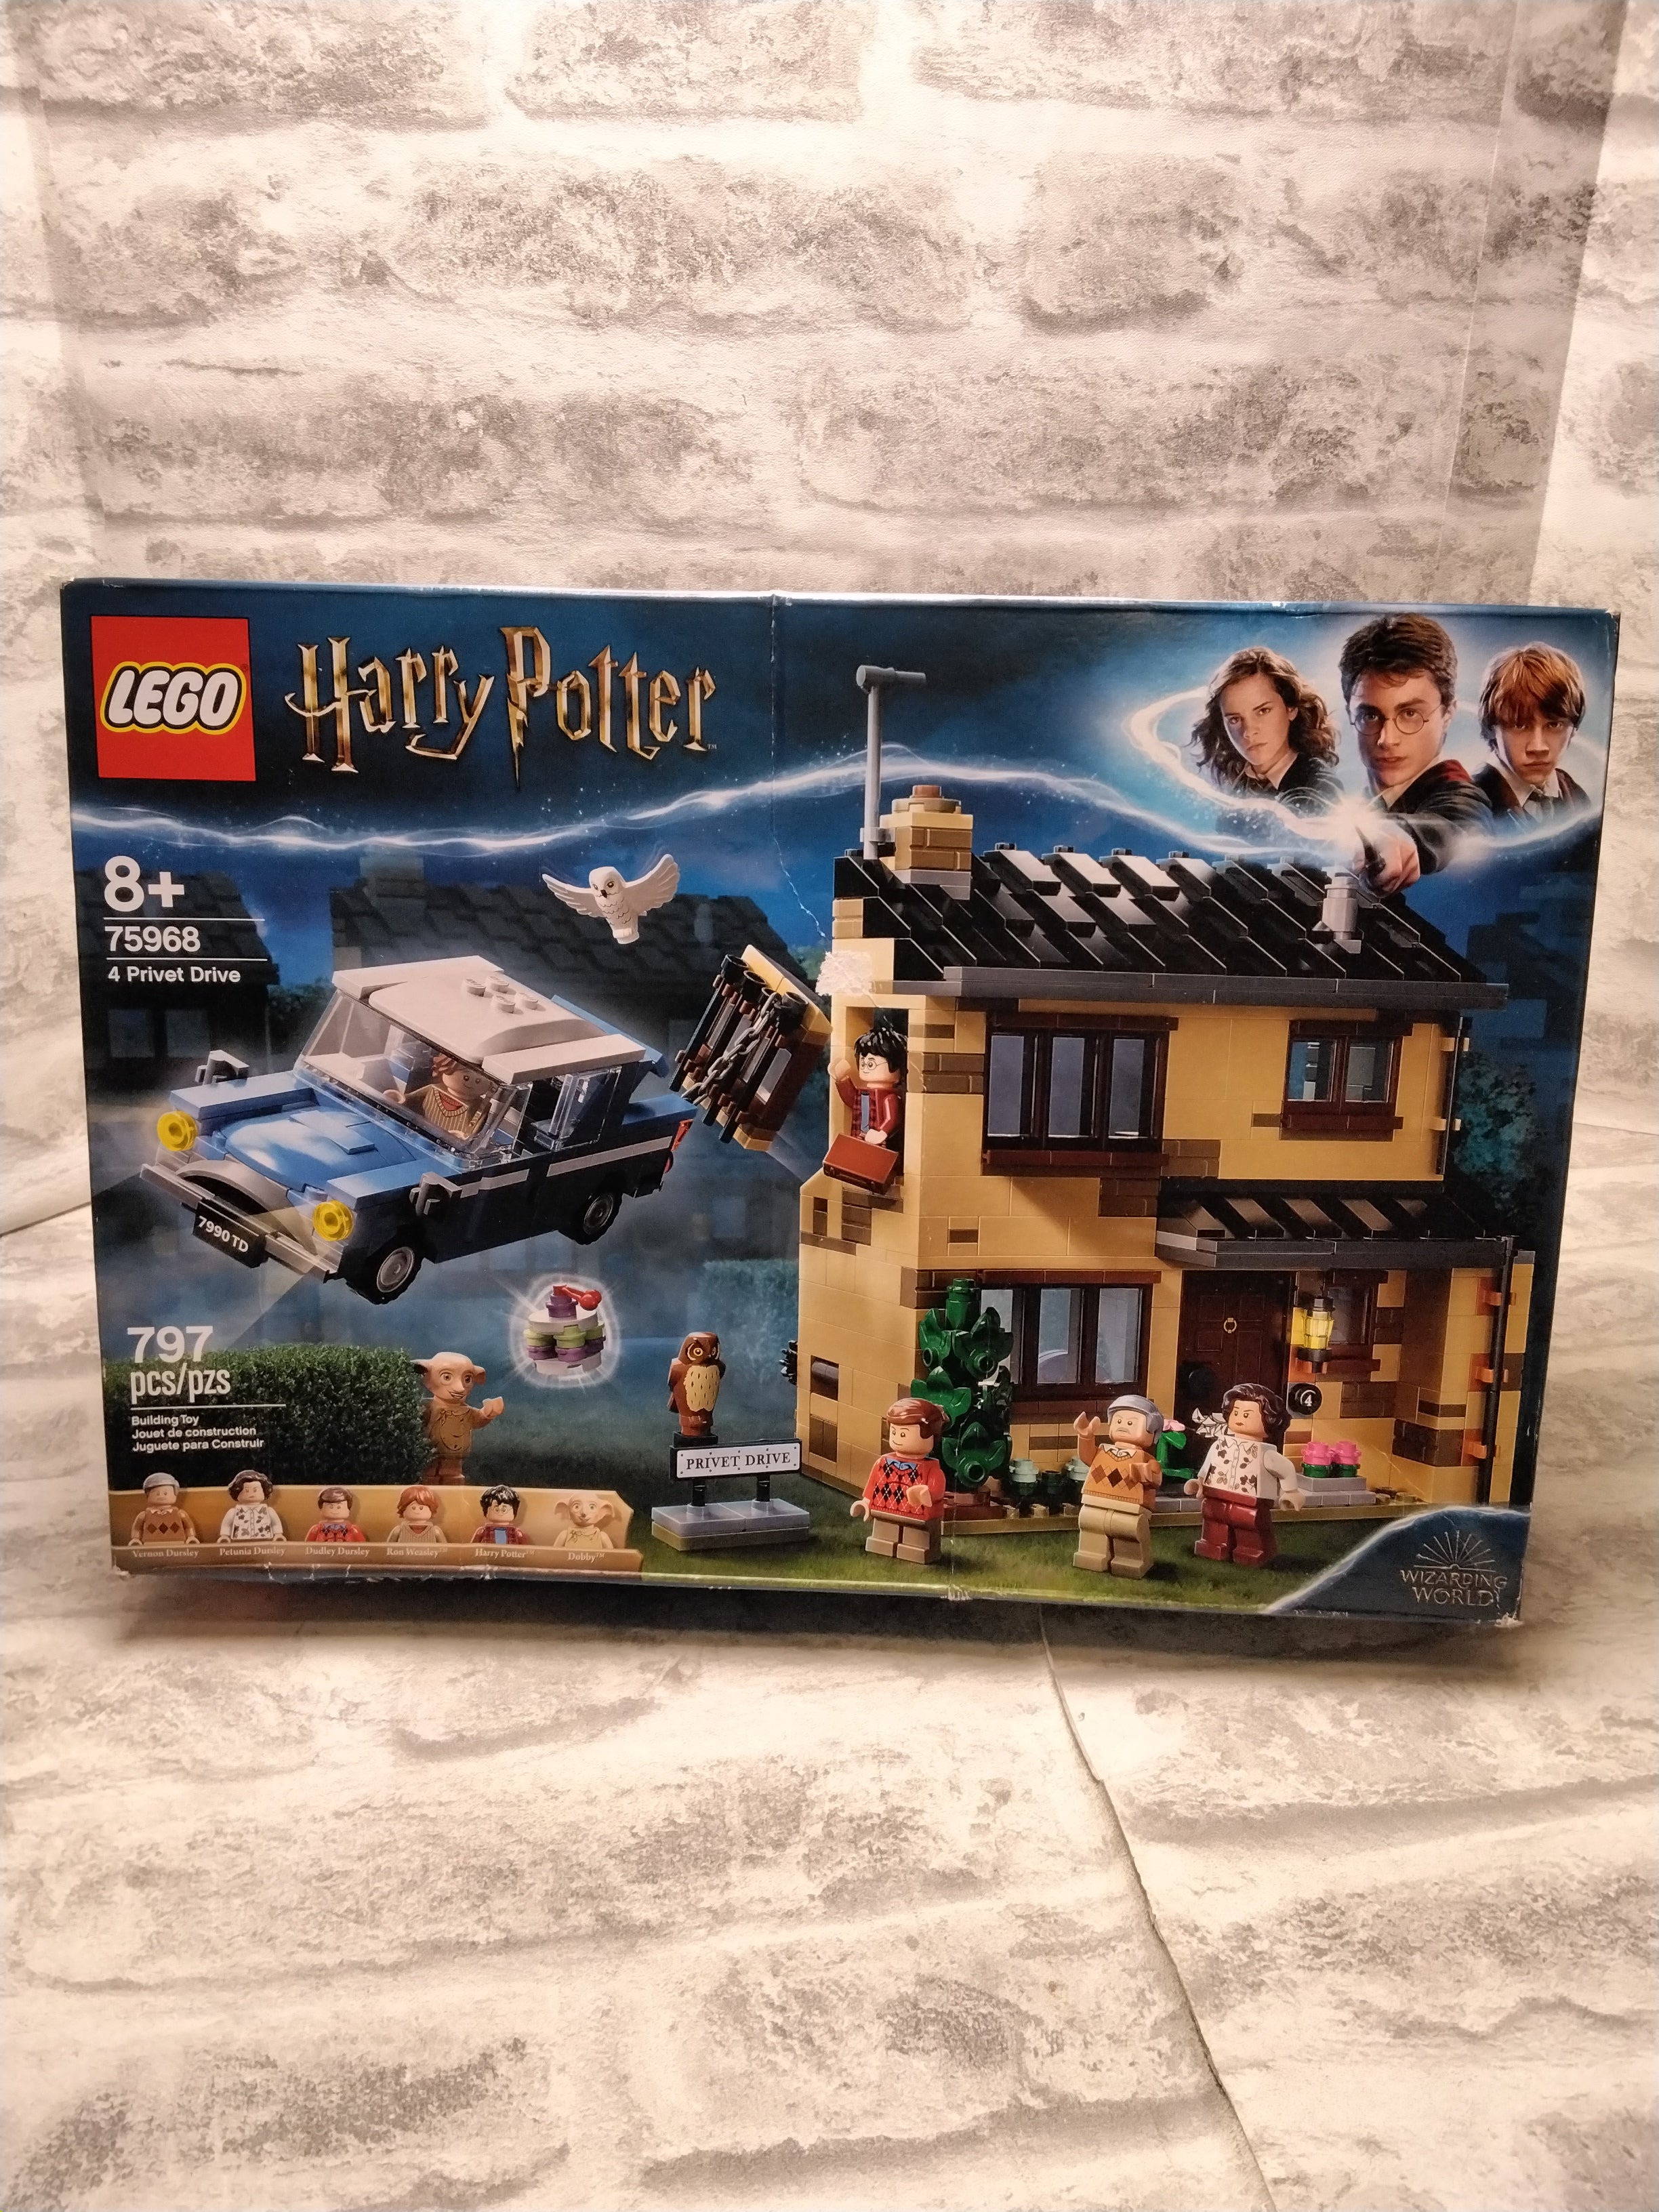 LEGO Harry Potter 4 Privet Drive 75968, (797 Pieces) (7673359040750)